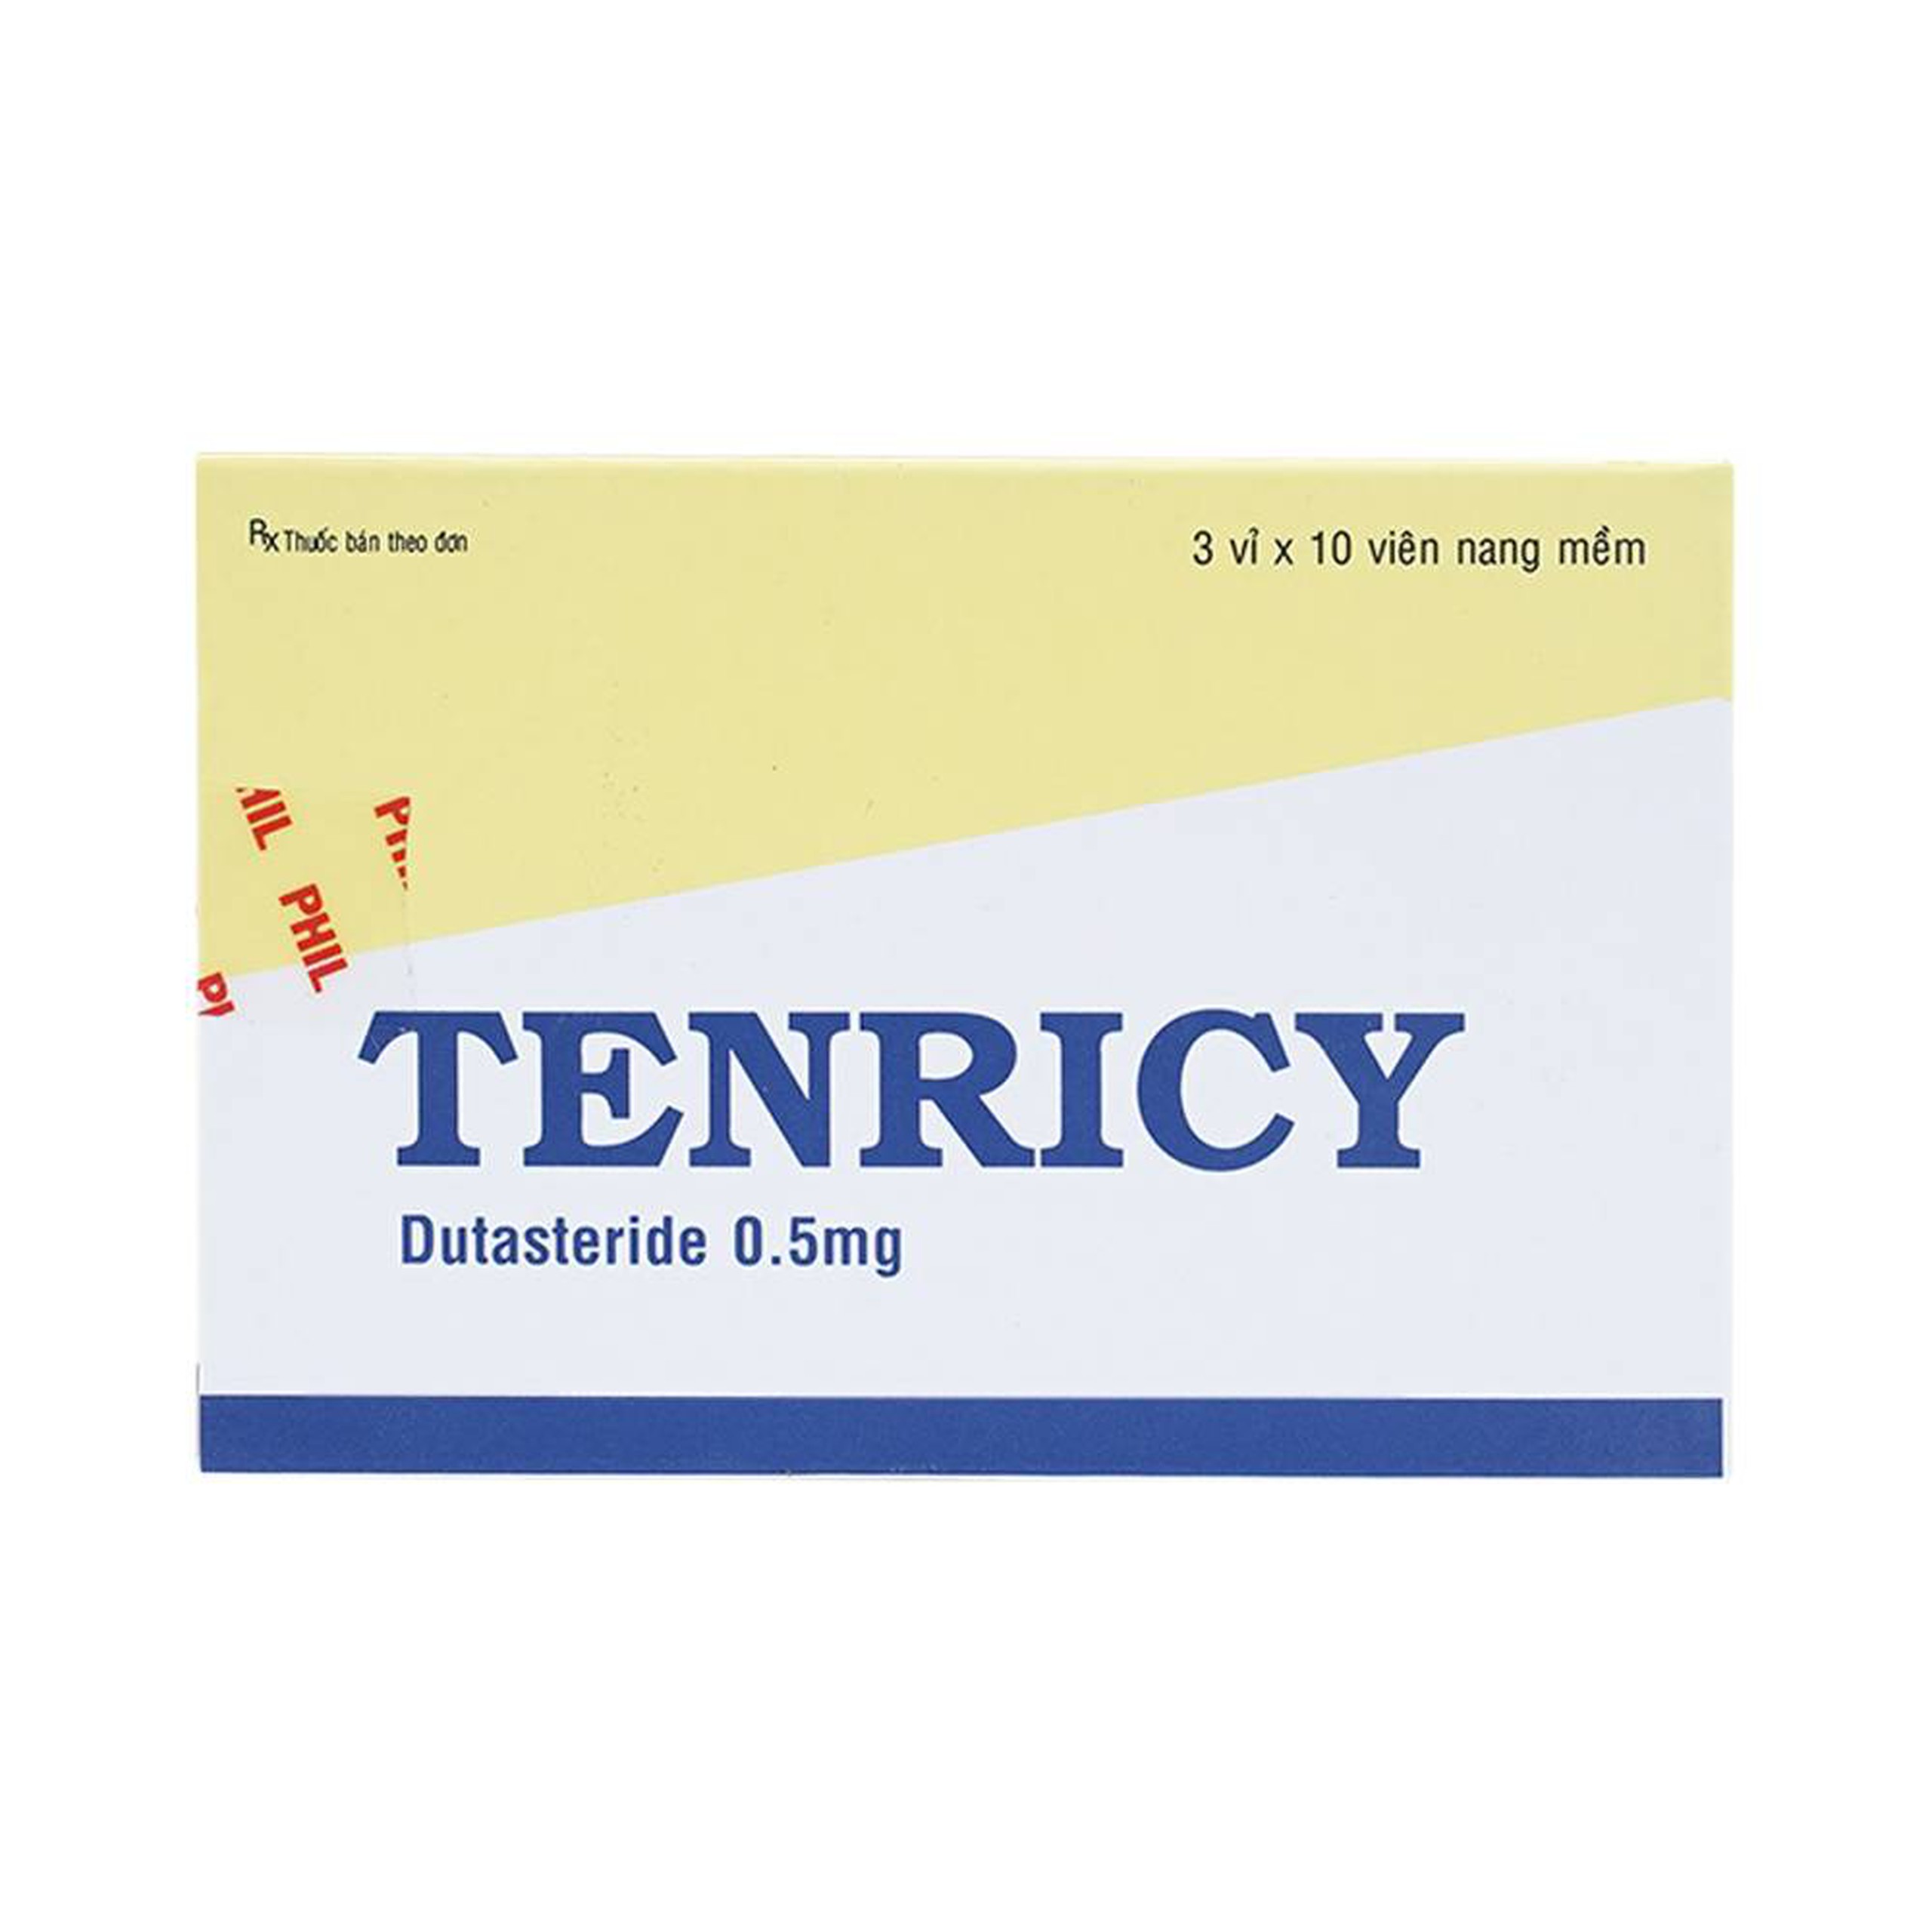 Viên nang mềm Tenricy 0.5mg Phil điều trị triệu chứng phì đại tuyến tiền liệt lành tính (3 vỉ x 10 viên)